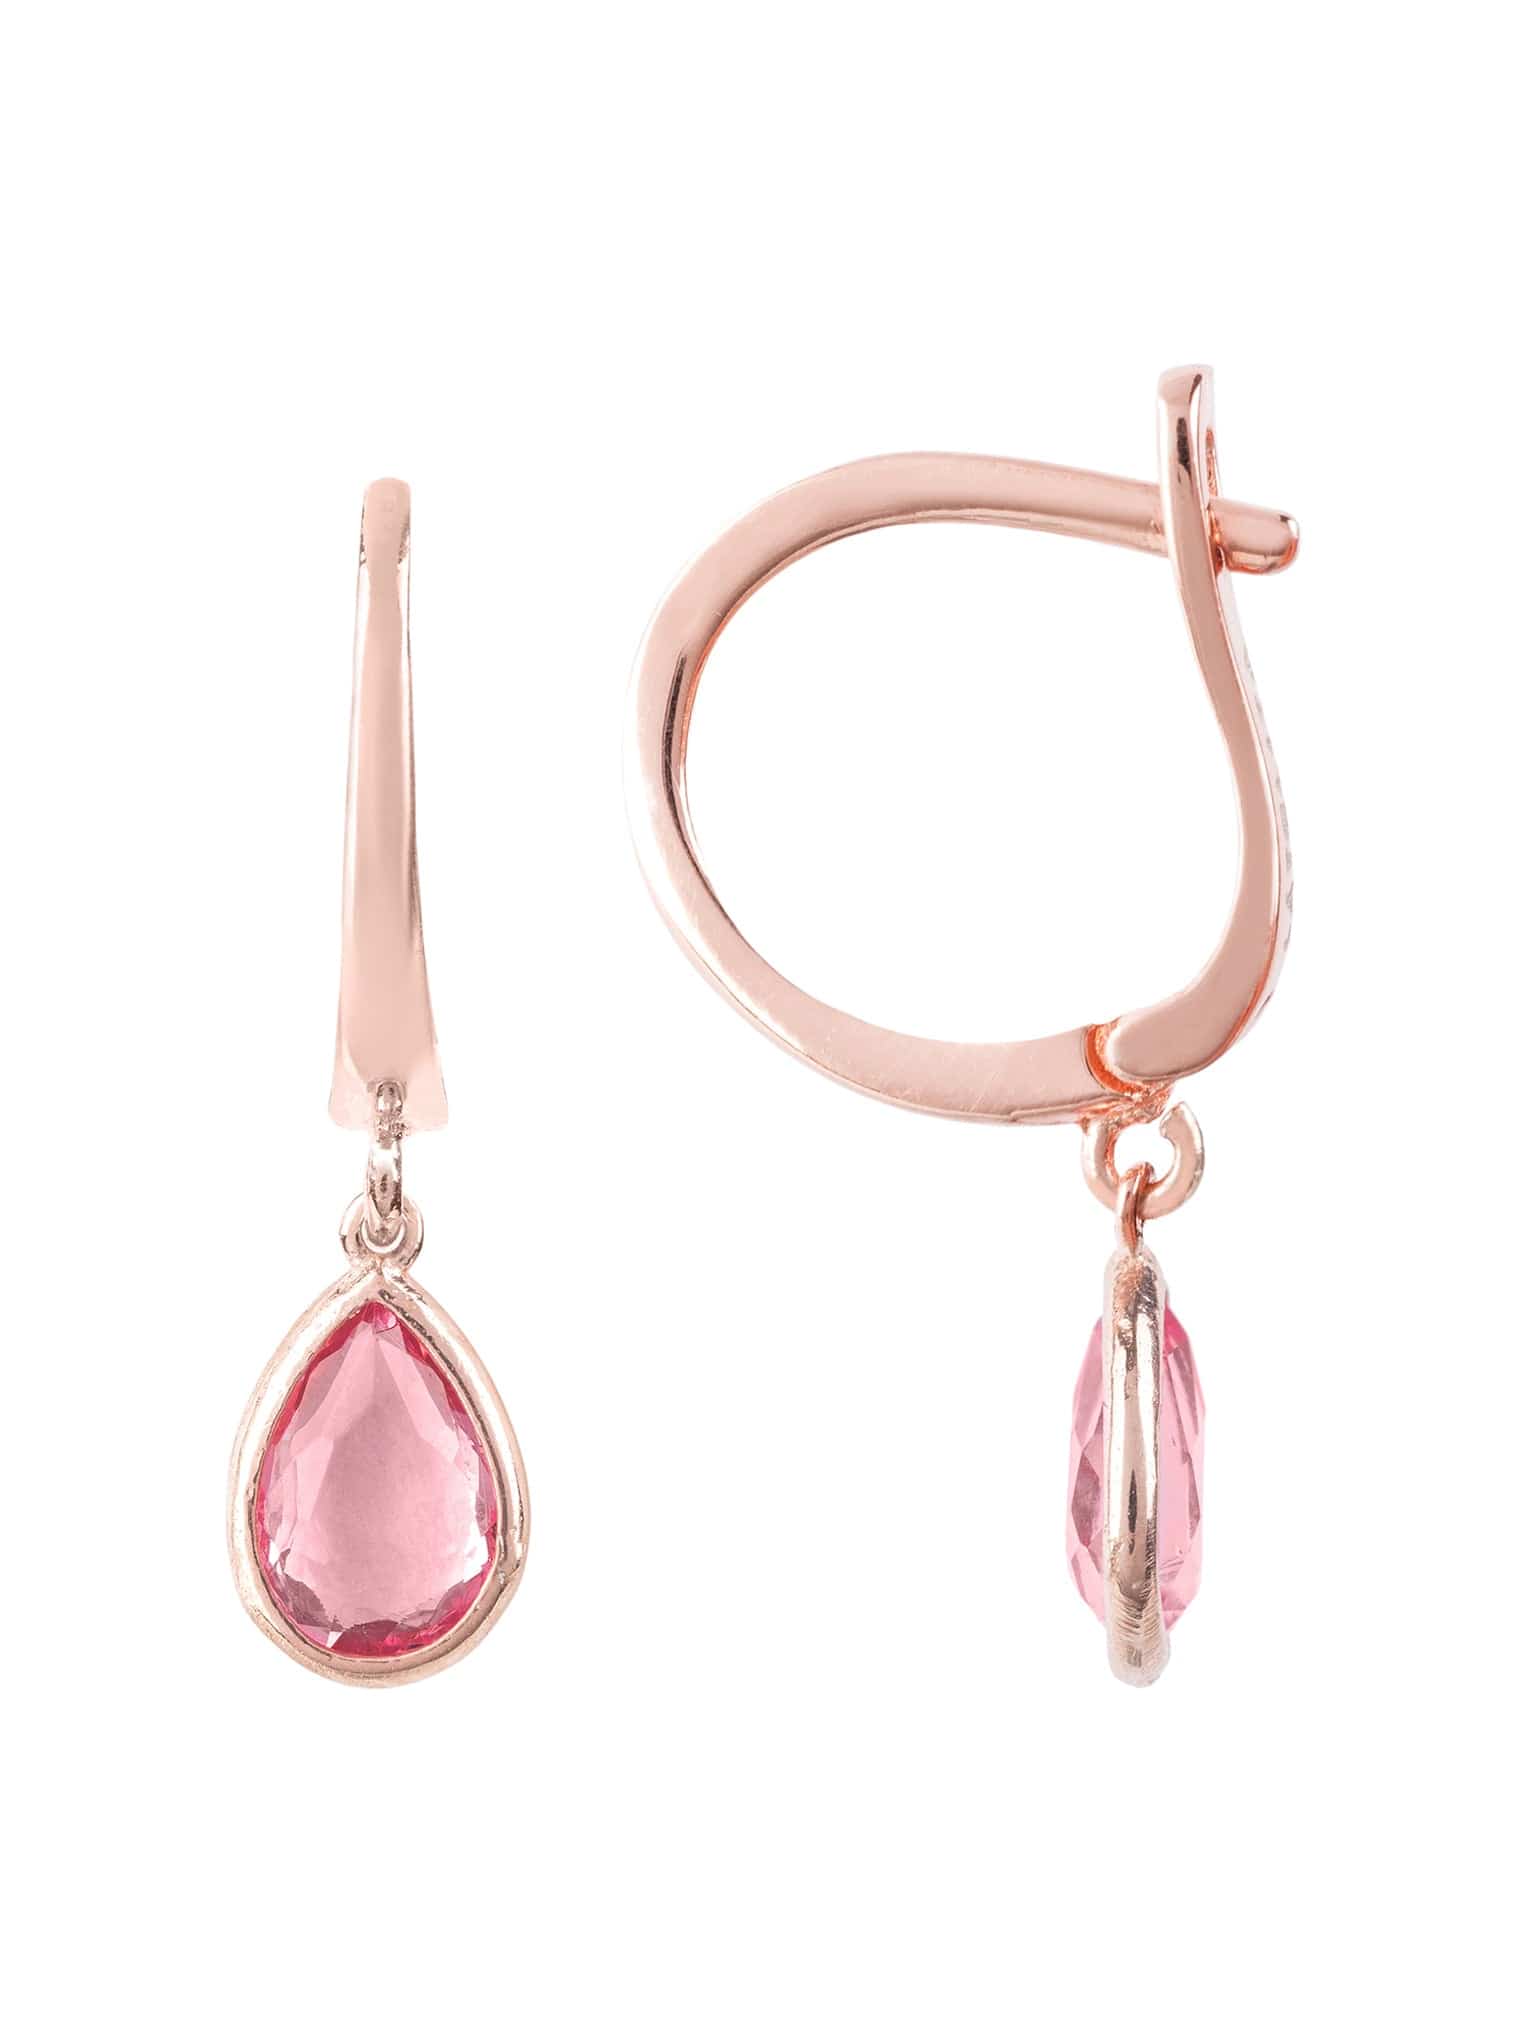 Pisa Mini Teardrop Earrings Rosegold Pink Tourmaline - LATELITA Earrings